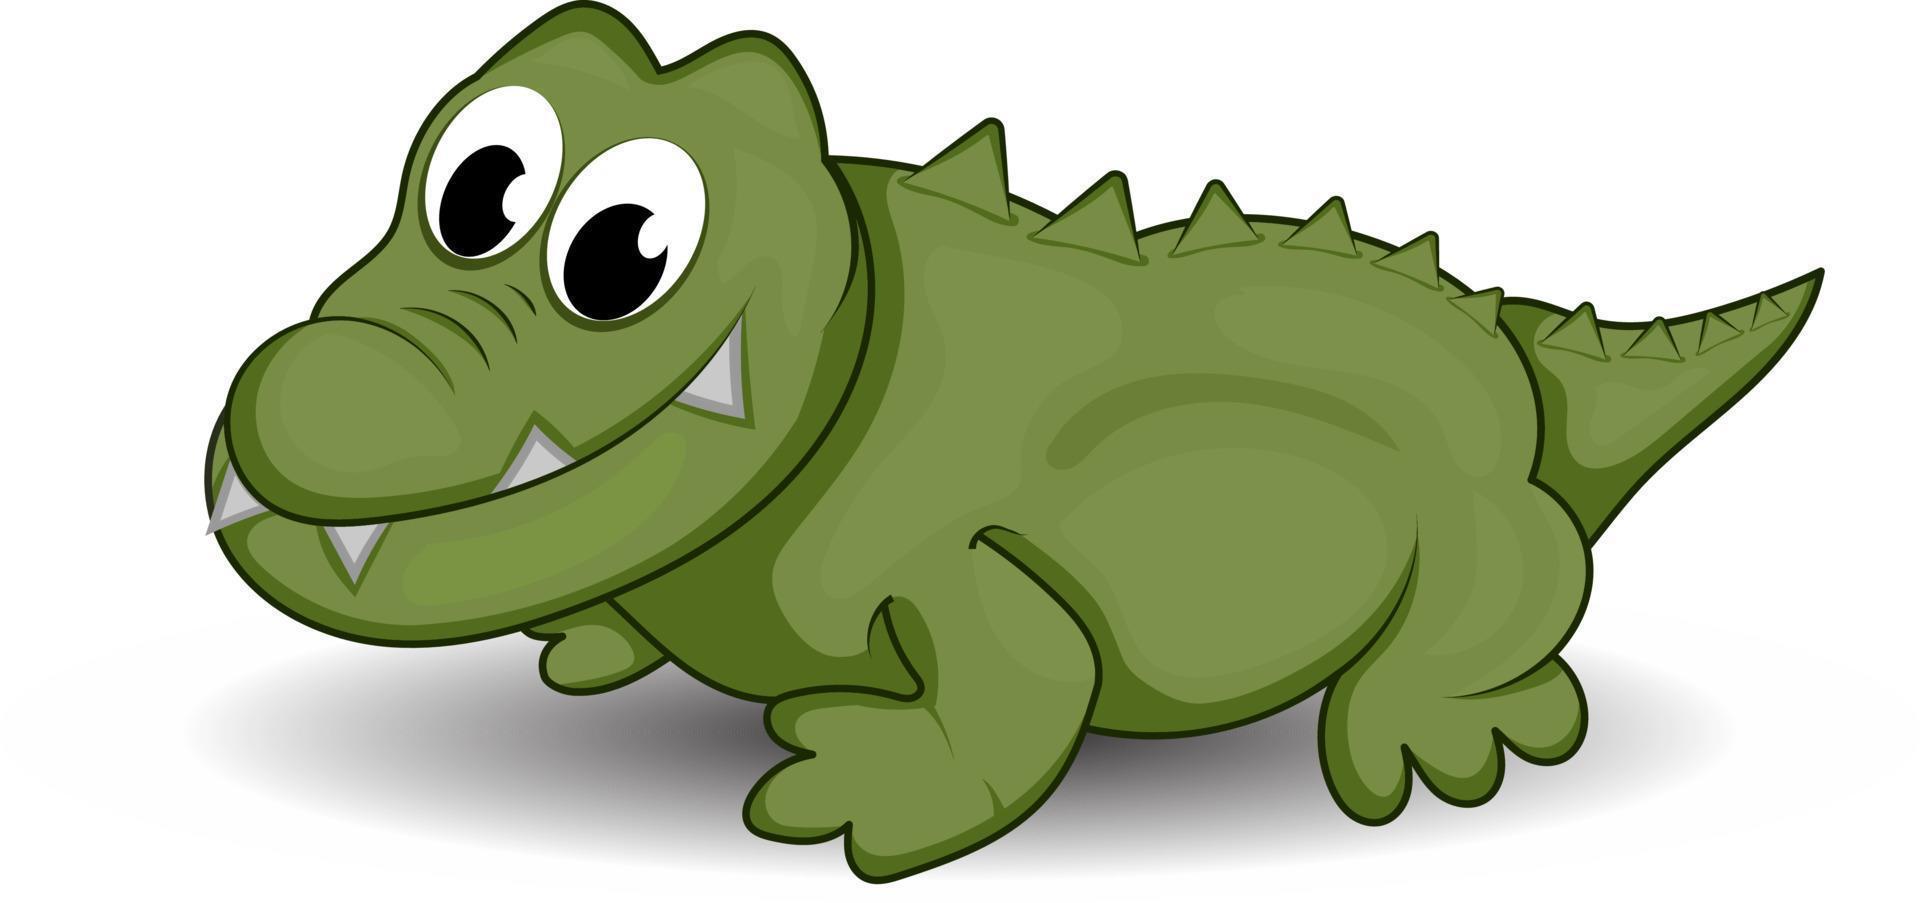 Cartoon süßes grünes Krokodil mit großen Zähnen isoliert auf weißem Hintergrund vektor